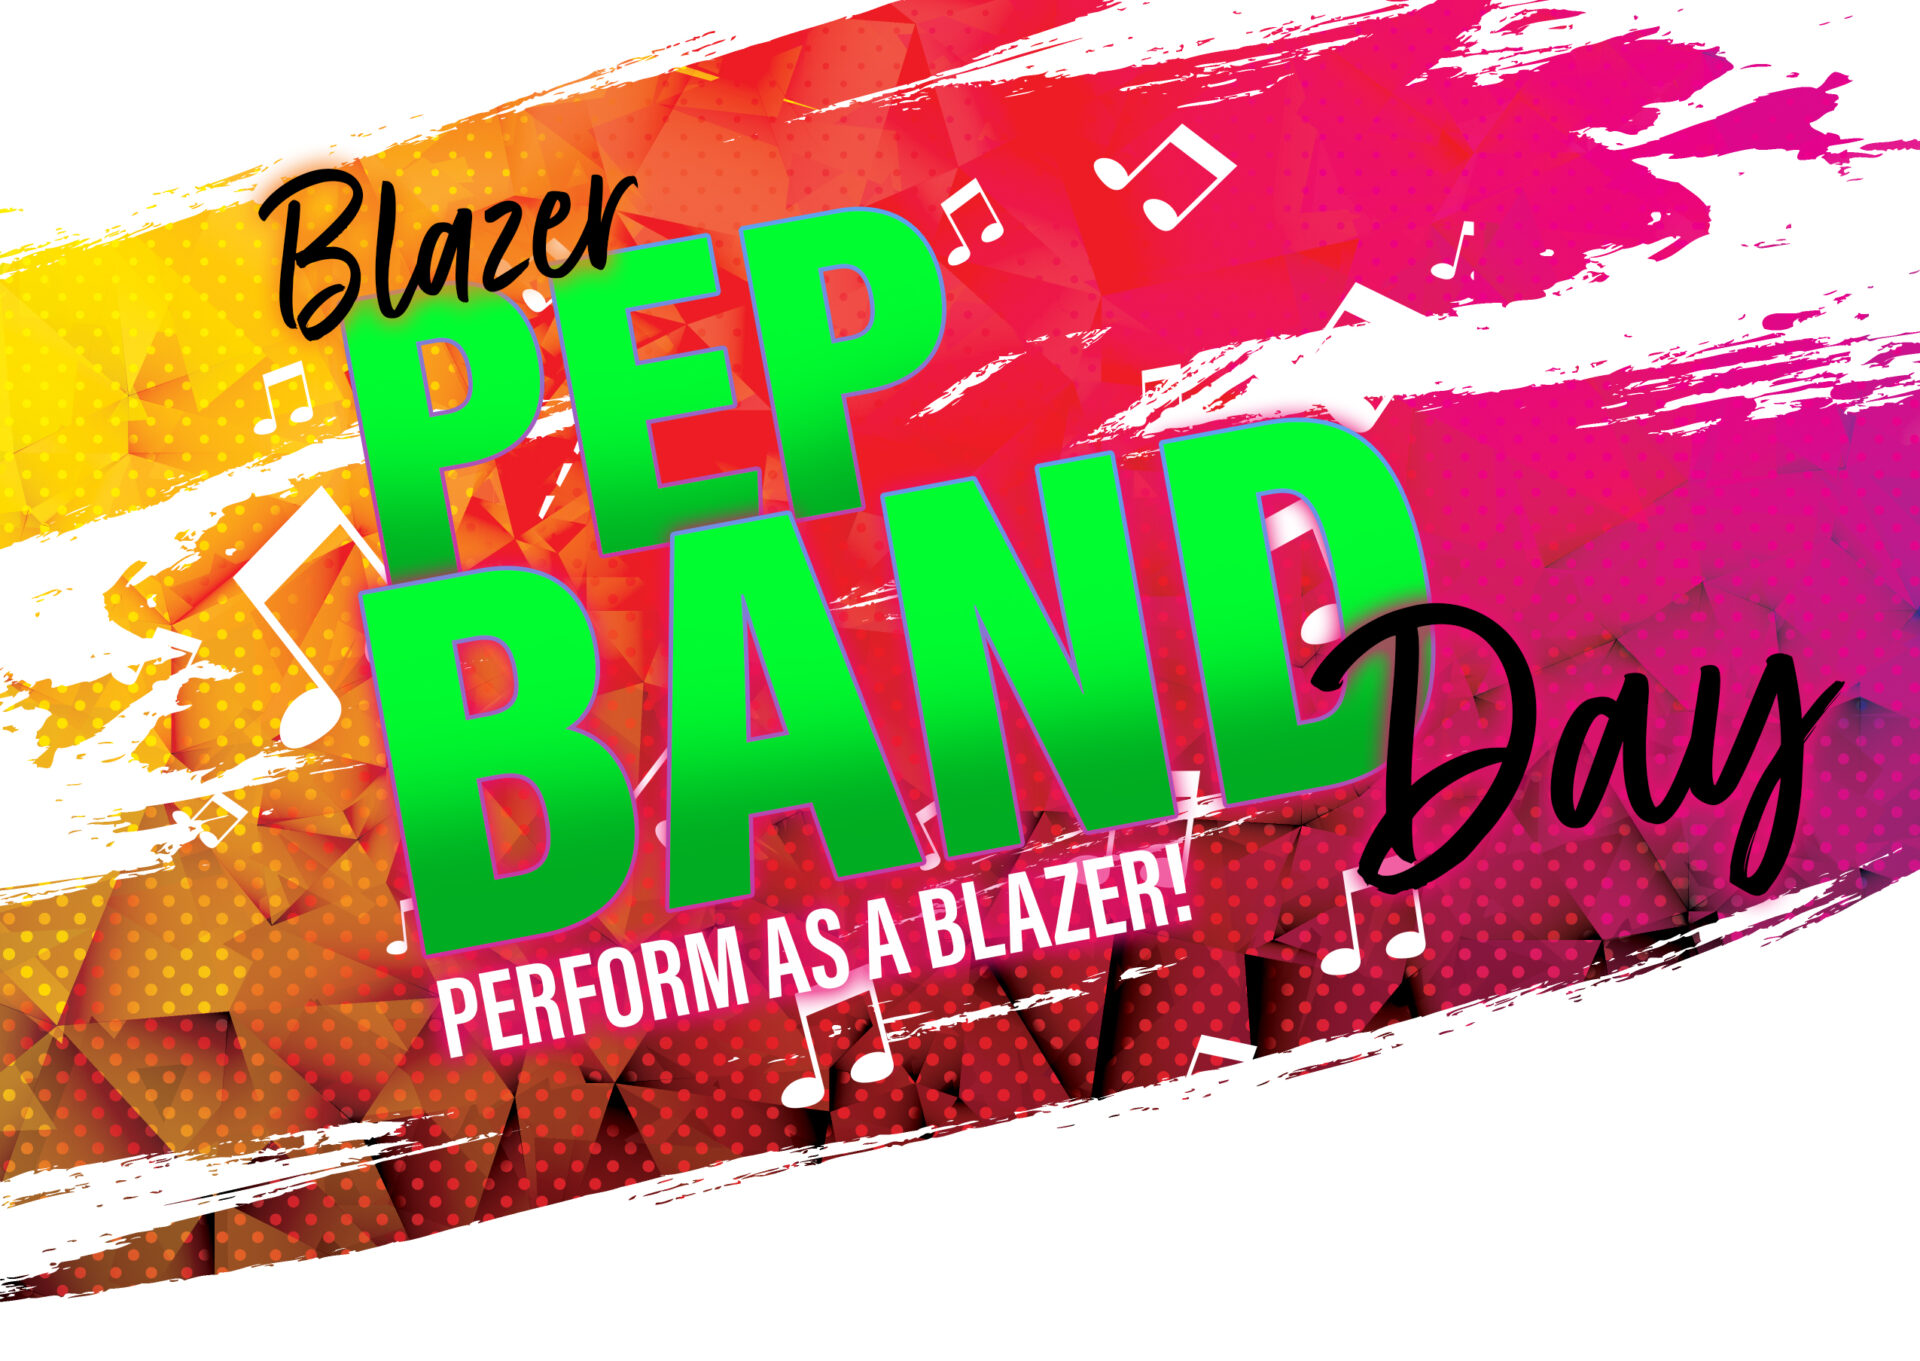 Blazer Pep Band Day Preform as a Blazer!